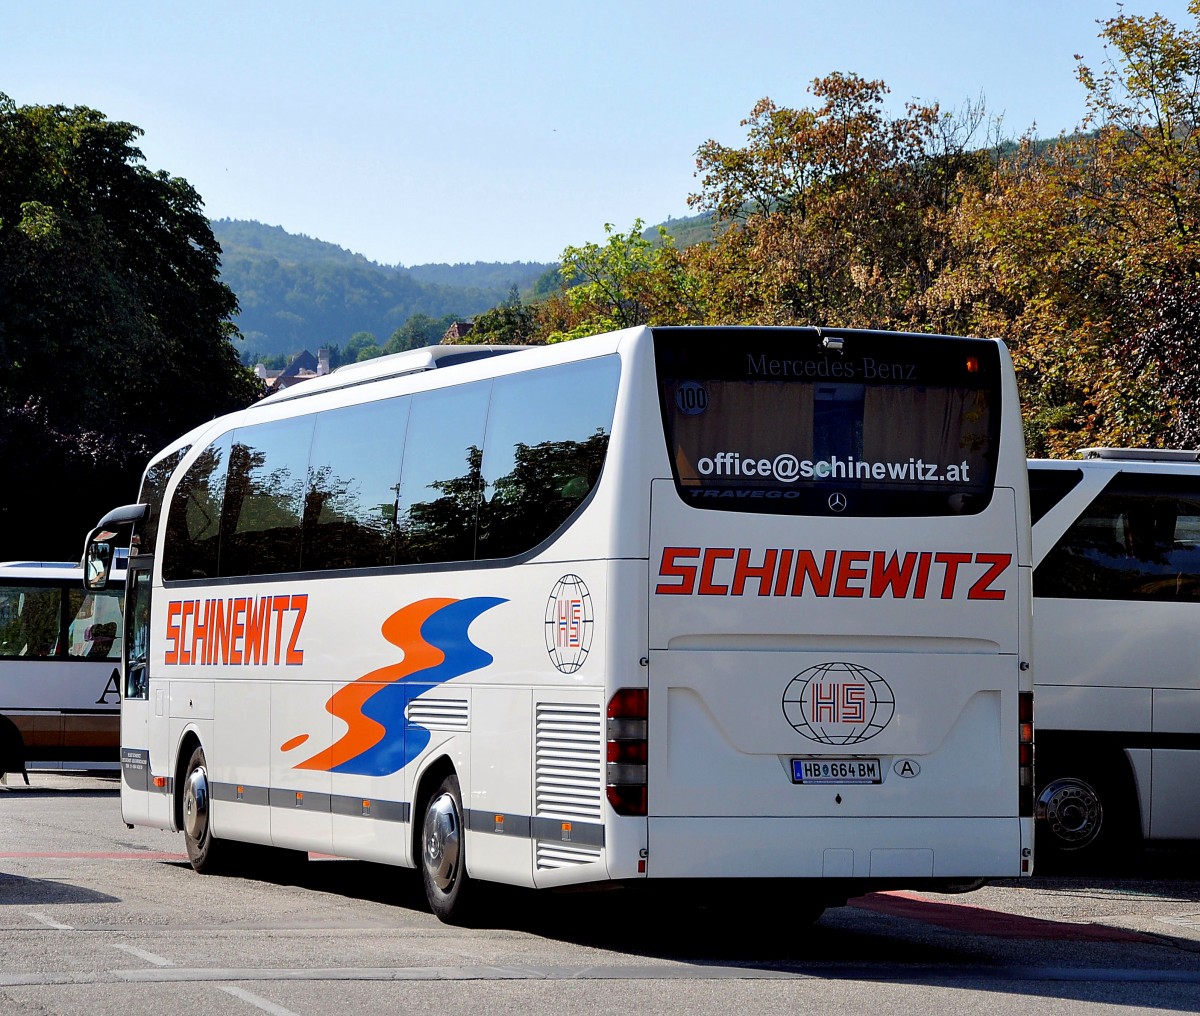 MERCEDES BENZ Travego von SCHINEWITZ Reisen aus sterreich im September 2013 in Krems unterwegs.